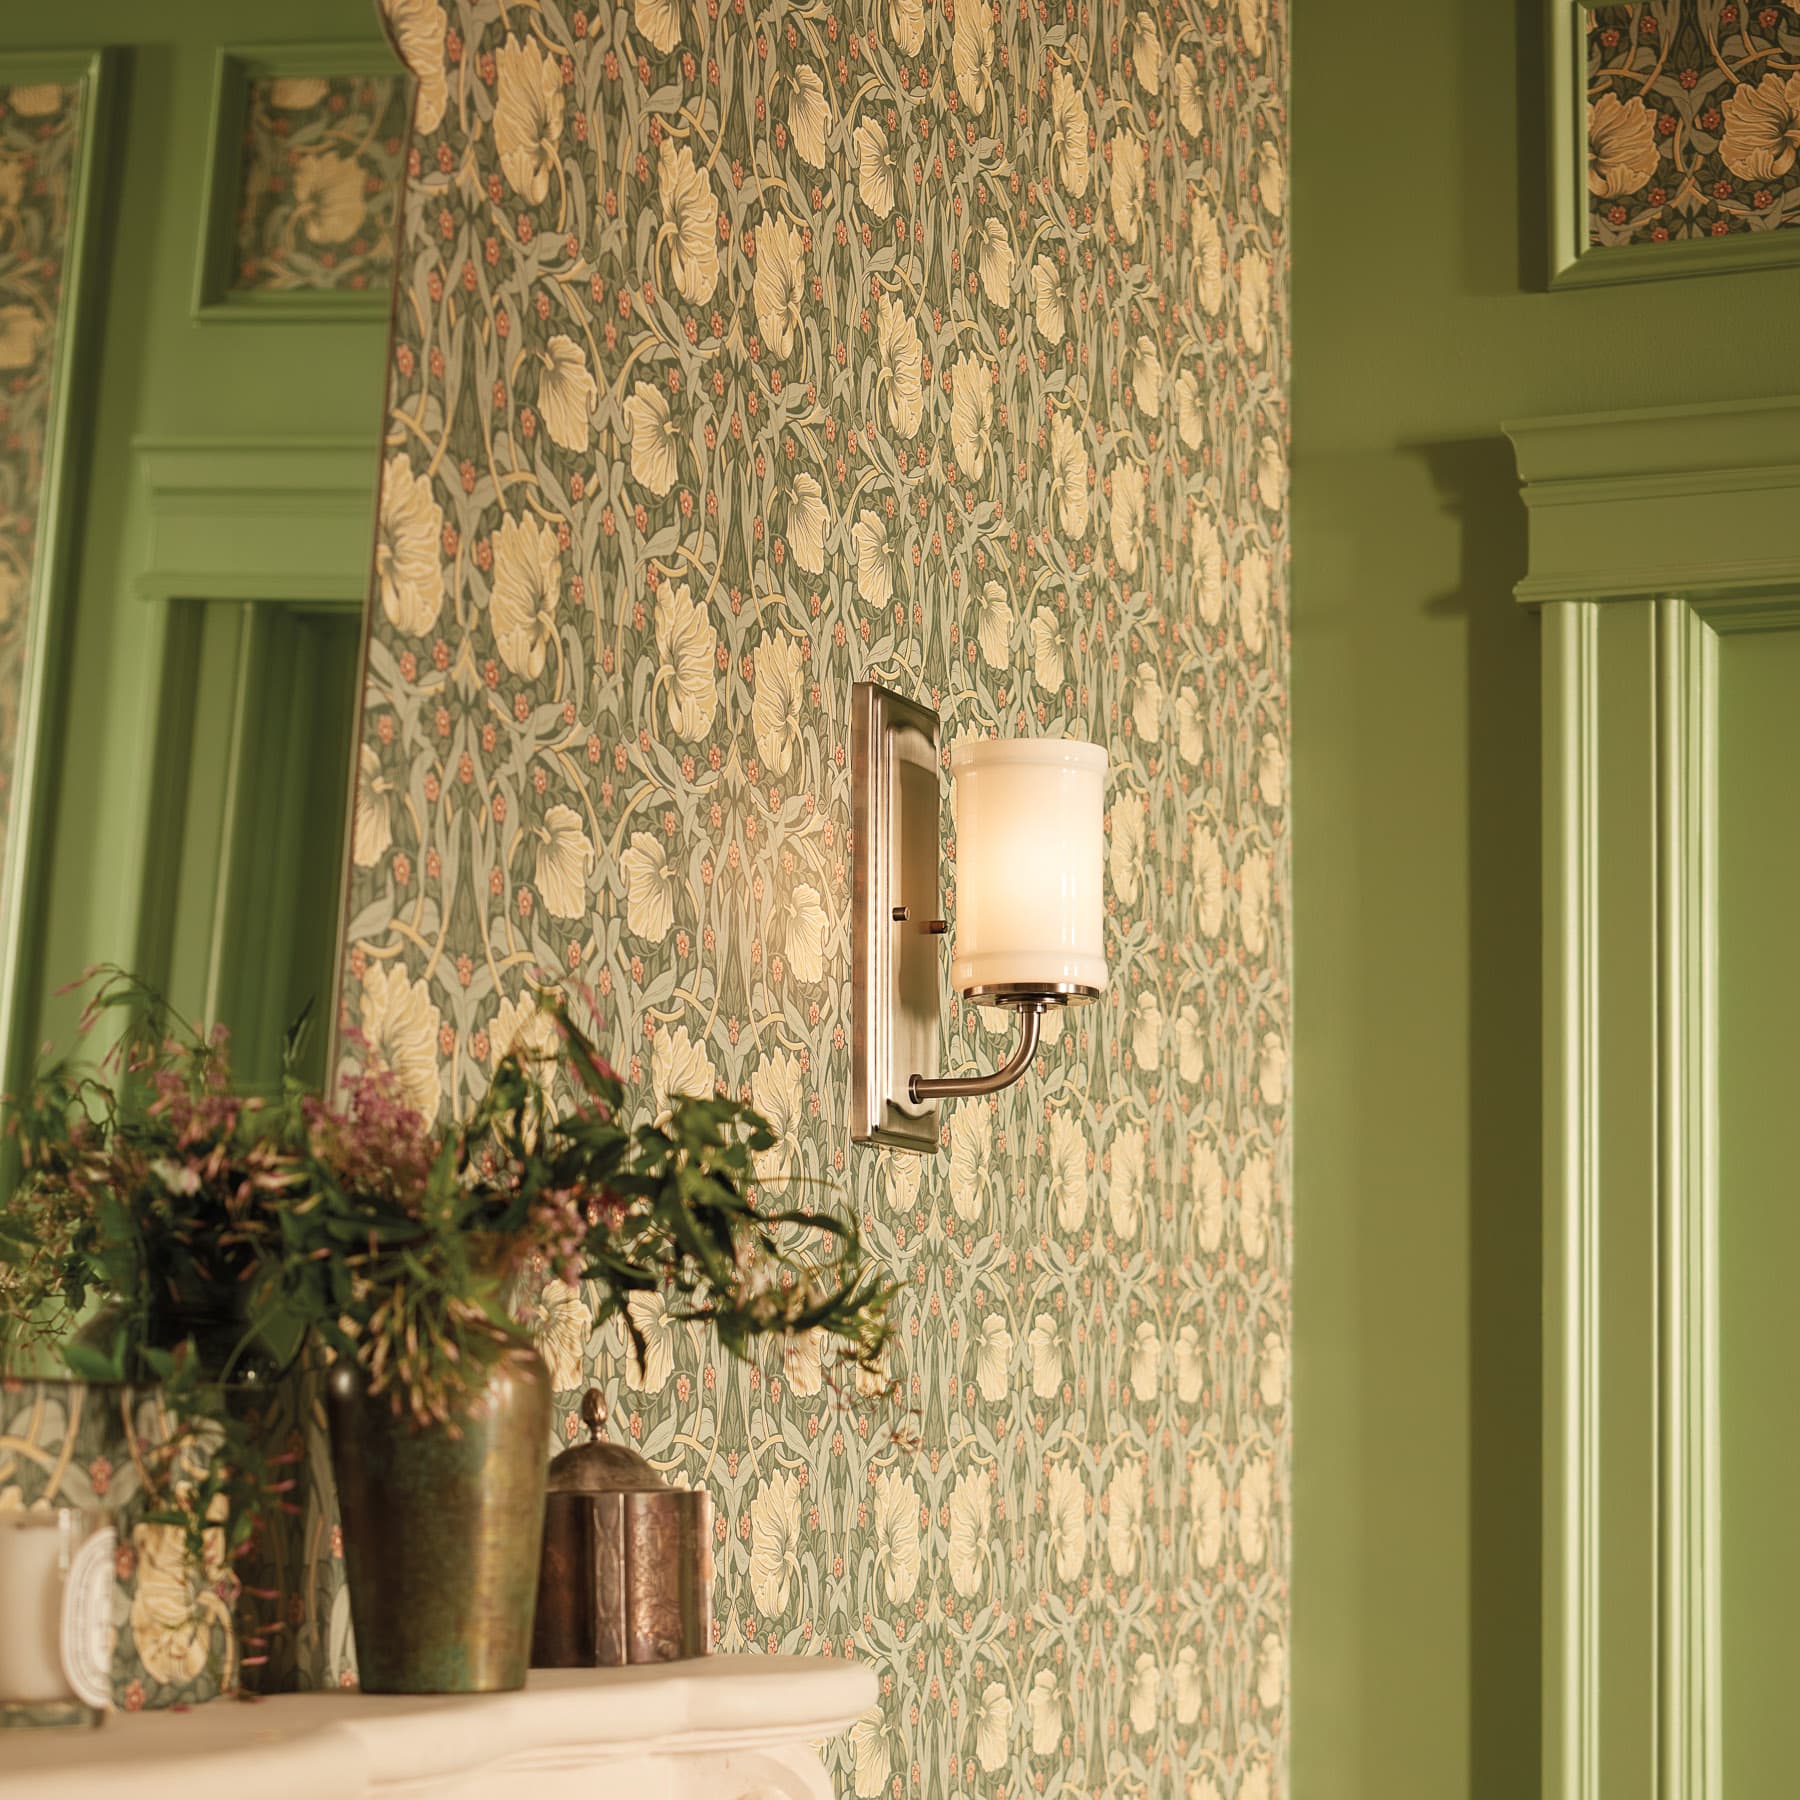 light sconce on green wallpaper